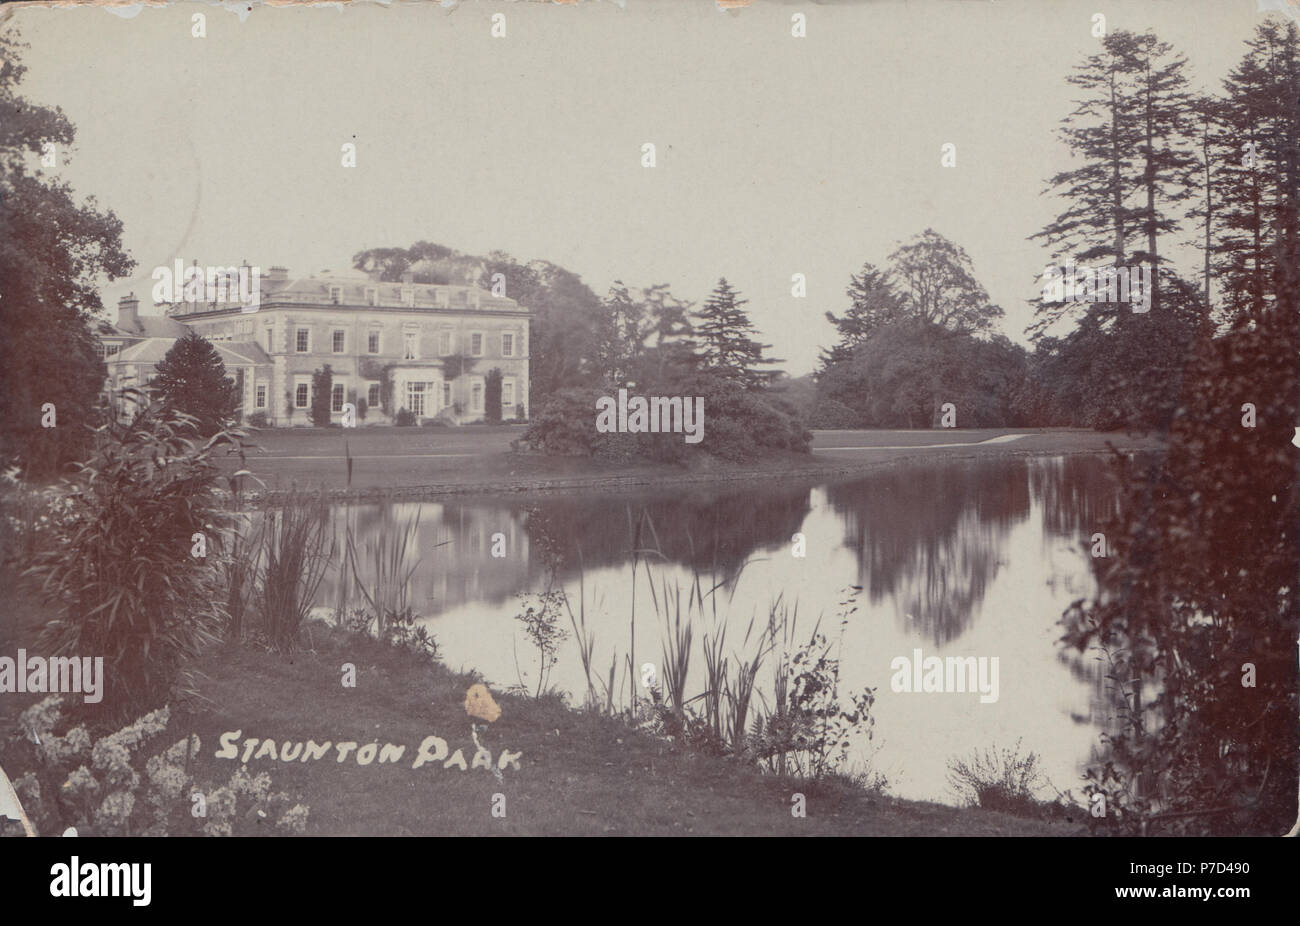 Vintage 1906 Photographie de Staunton Park House, Staunton-On-Flèche, Herefordshire, Angleterre, Royaume-Uni. Démoli en 1921. Banque D'Images